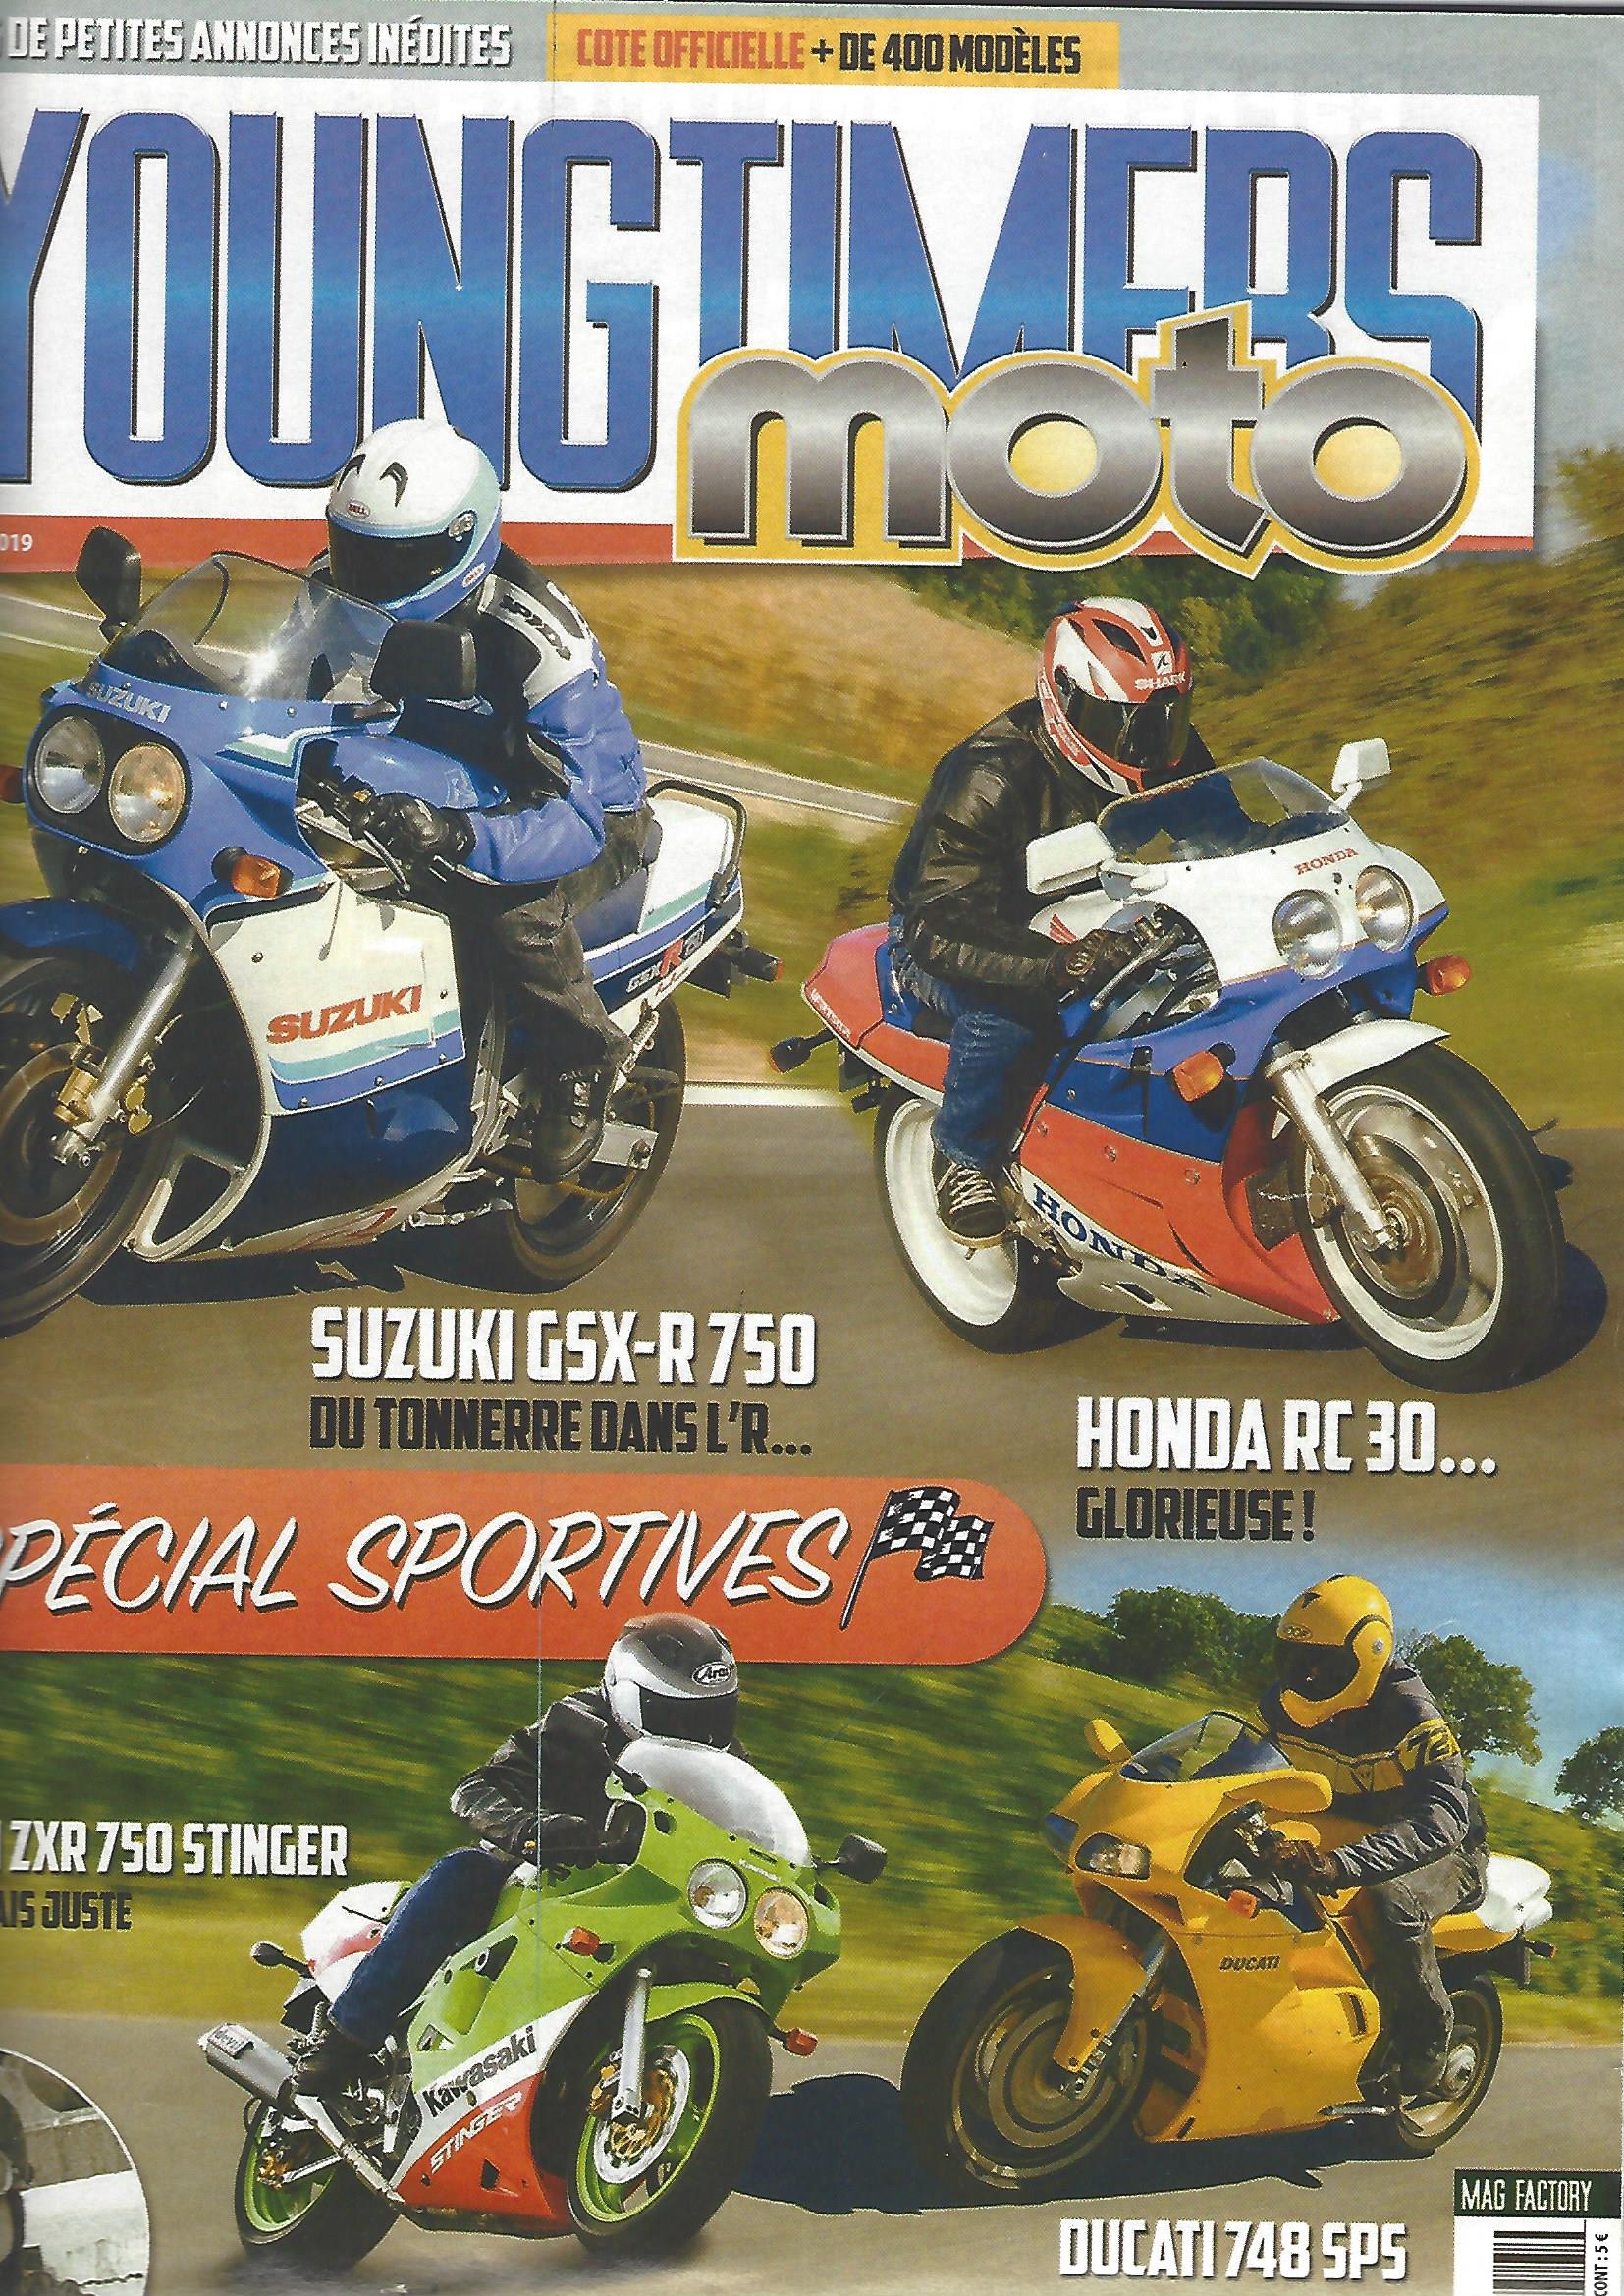 Honda RC30 2